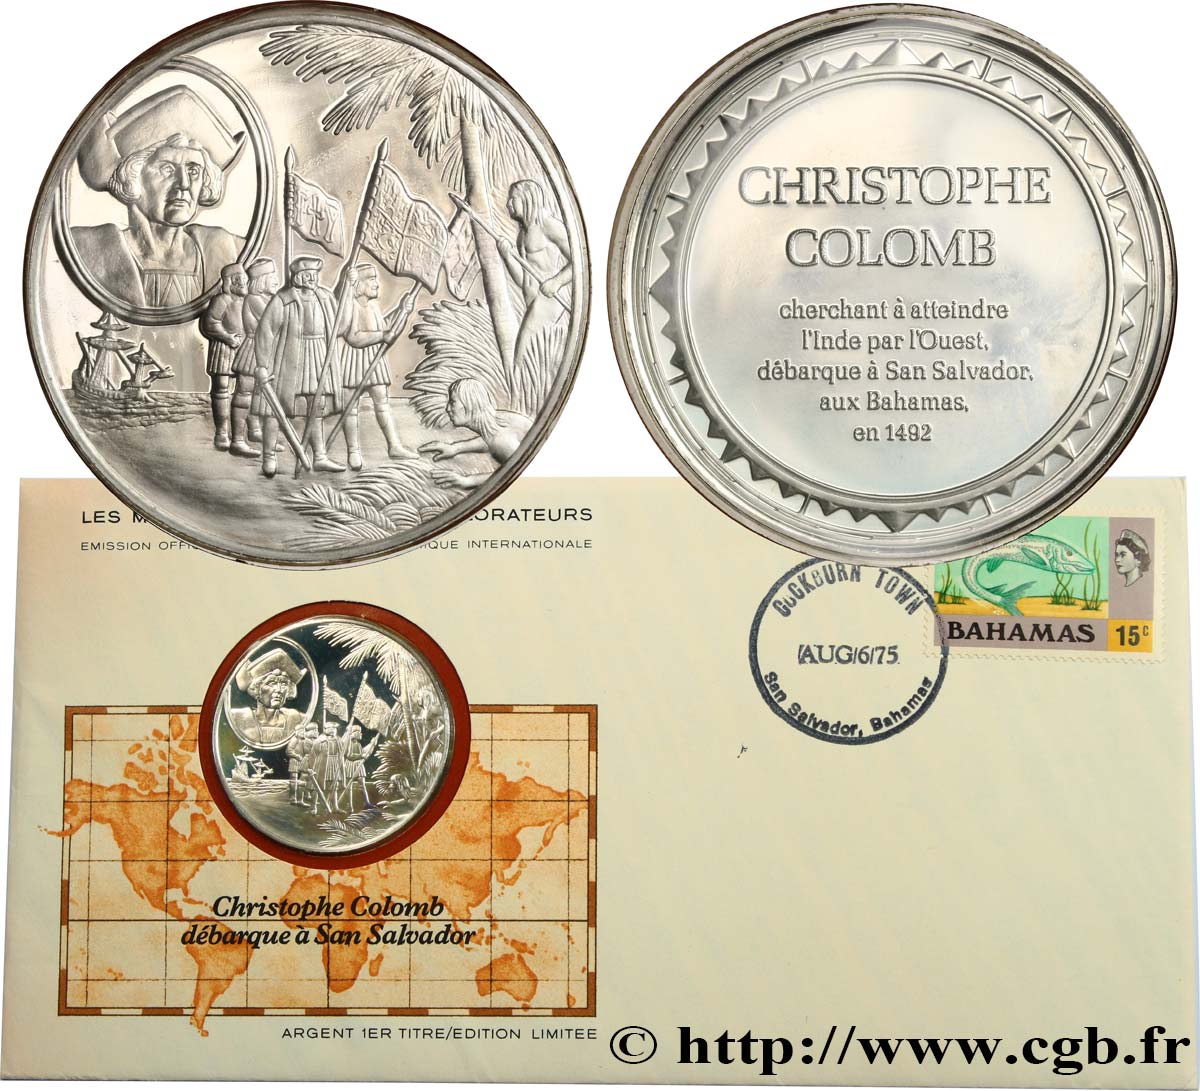 THE GREAT EXPLORERS  MEDALS Enveloppe “Timbre médaille”, Christophe Colomb débarque à San Salvador fST